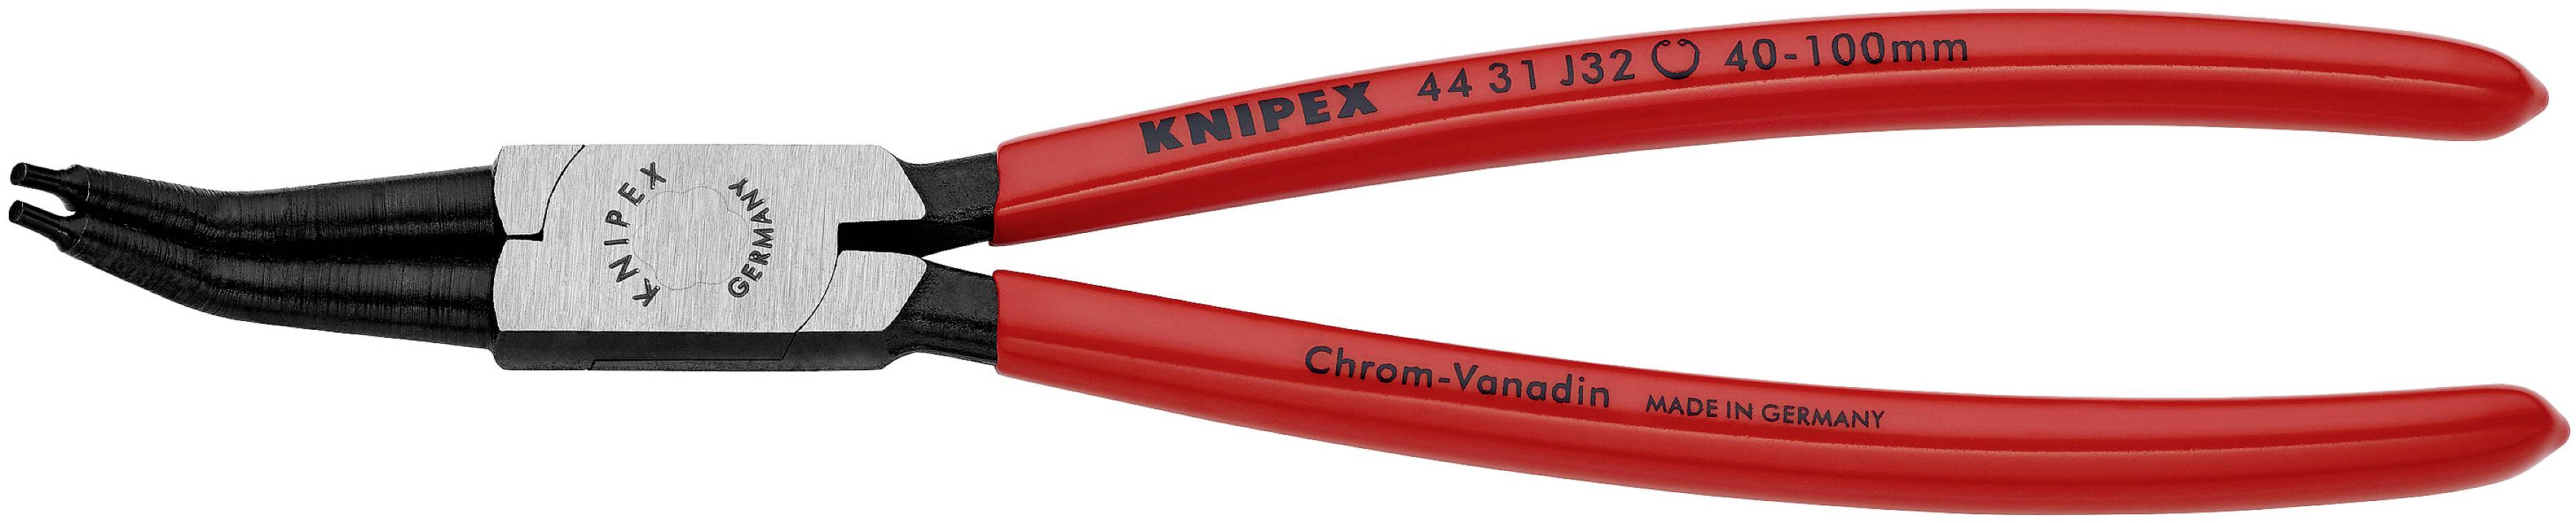 KNIPEX Seegerringzange Passend für Innenringe 40-100 mm Spitzenform abgewinkelt 45° 44 31 J32 (44 31